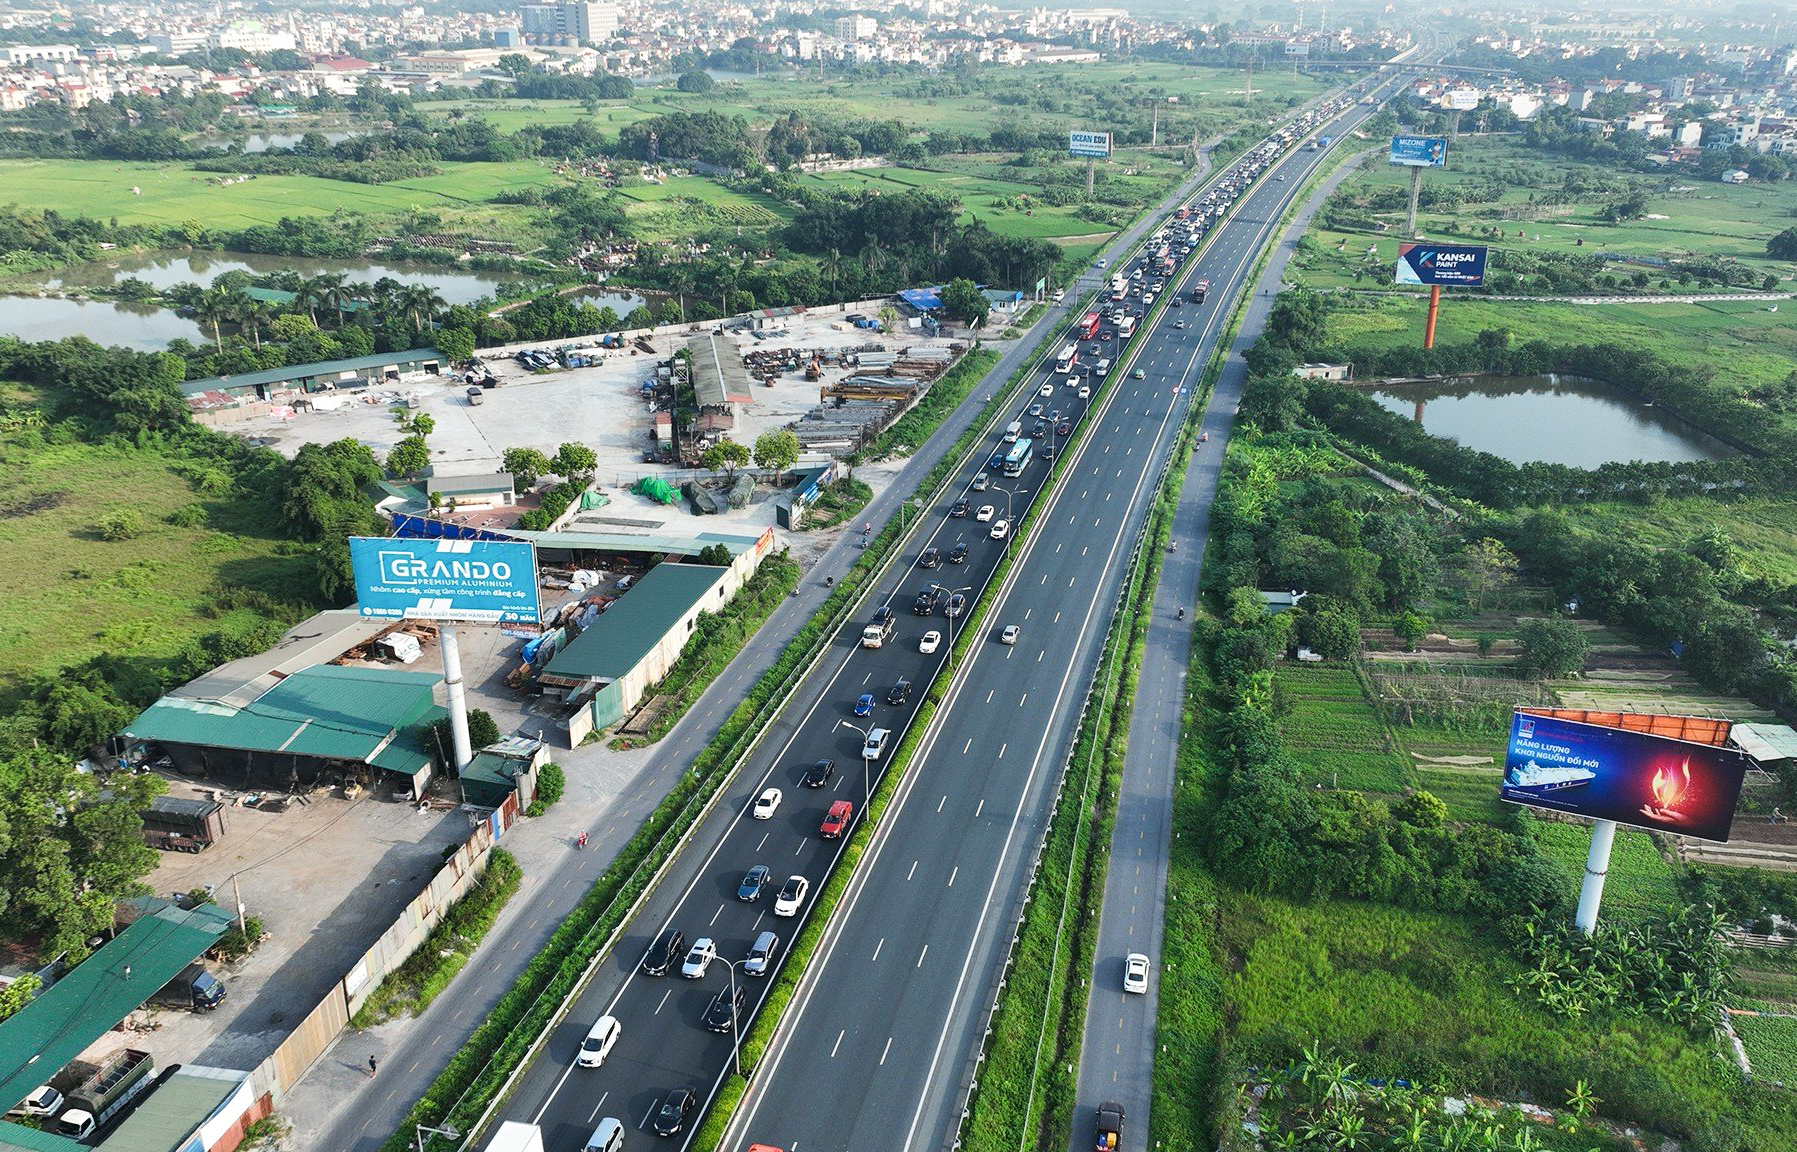 Ở chiều đi vào thành phố Hà Nội đường rất thông thoáng. Cập nhật trên ứng dụng Google Maps đến hơn 10h sáng nay (1.9), mật độ phương tiện lưu thông qua trạm thu phí vẫn rất lớn.